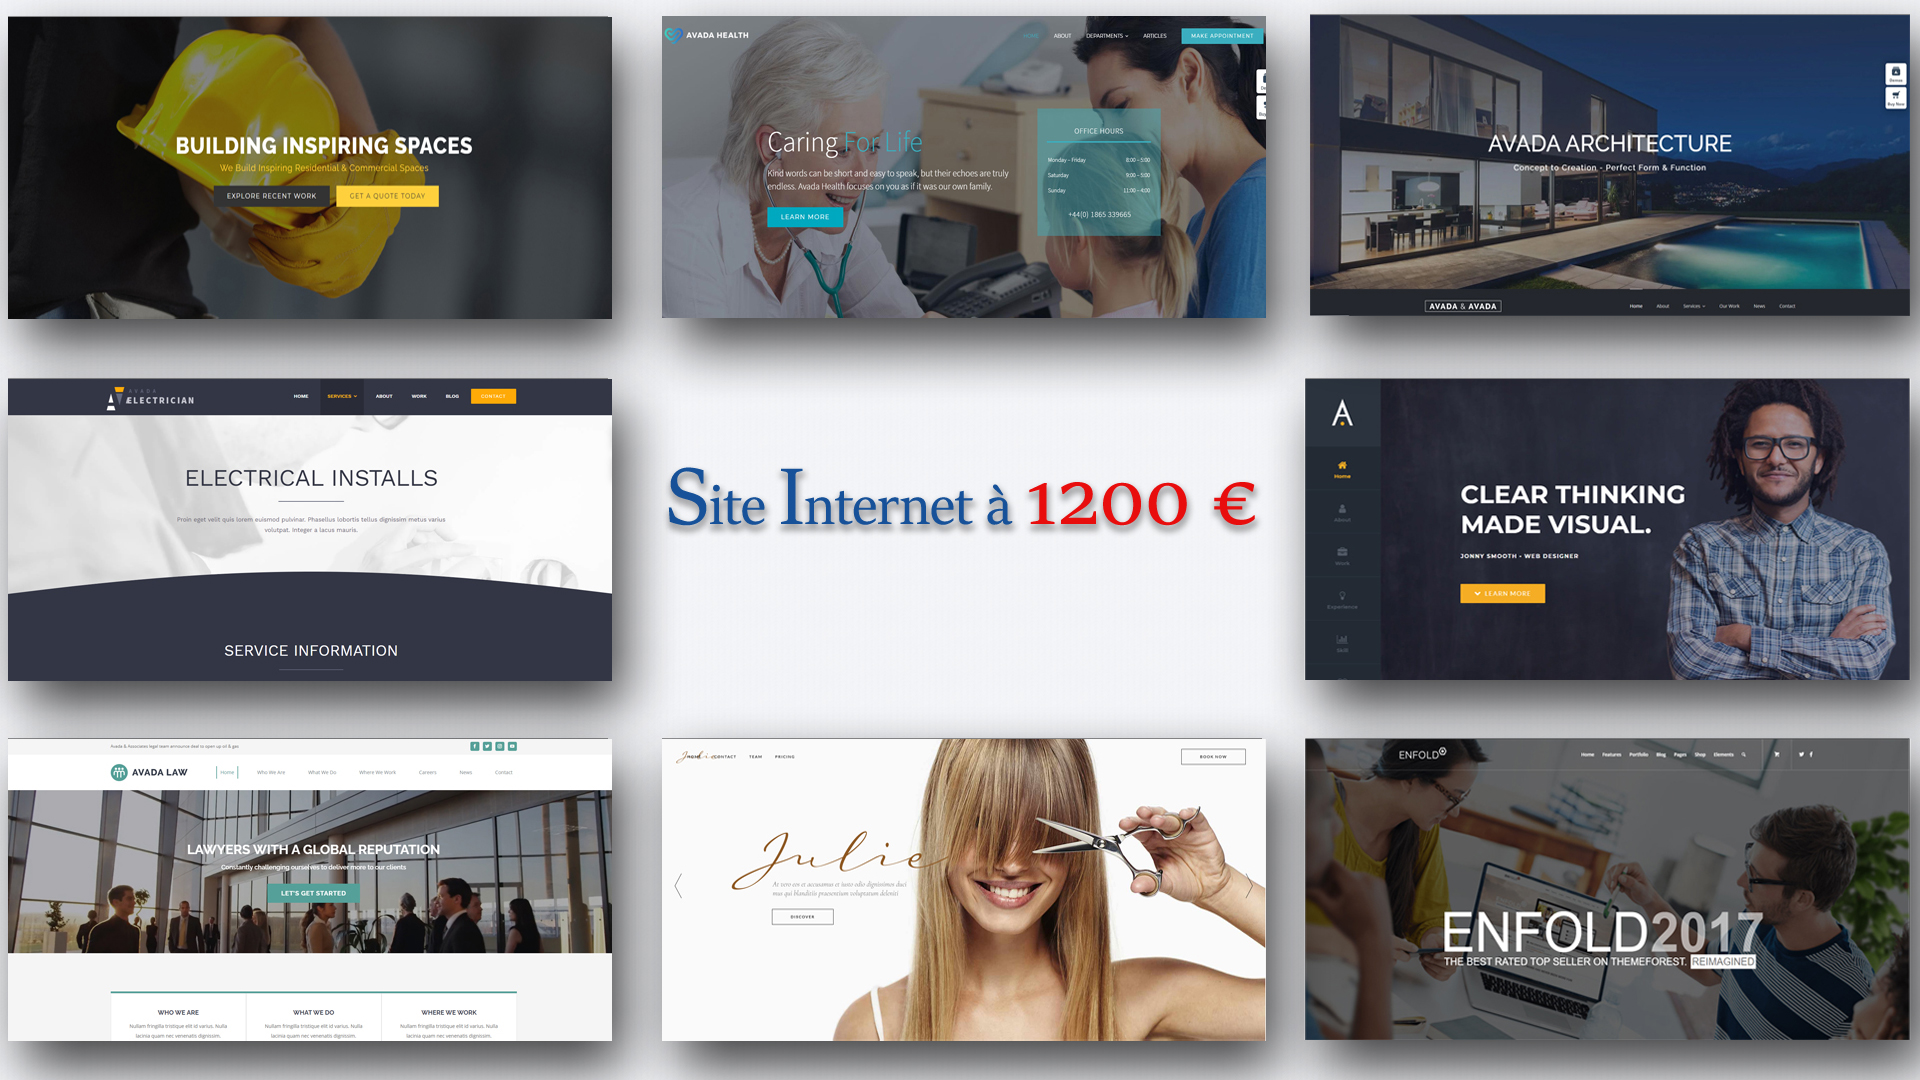 Site Internet à 1200 euros